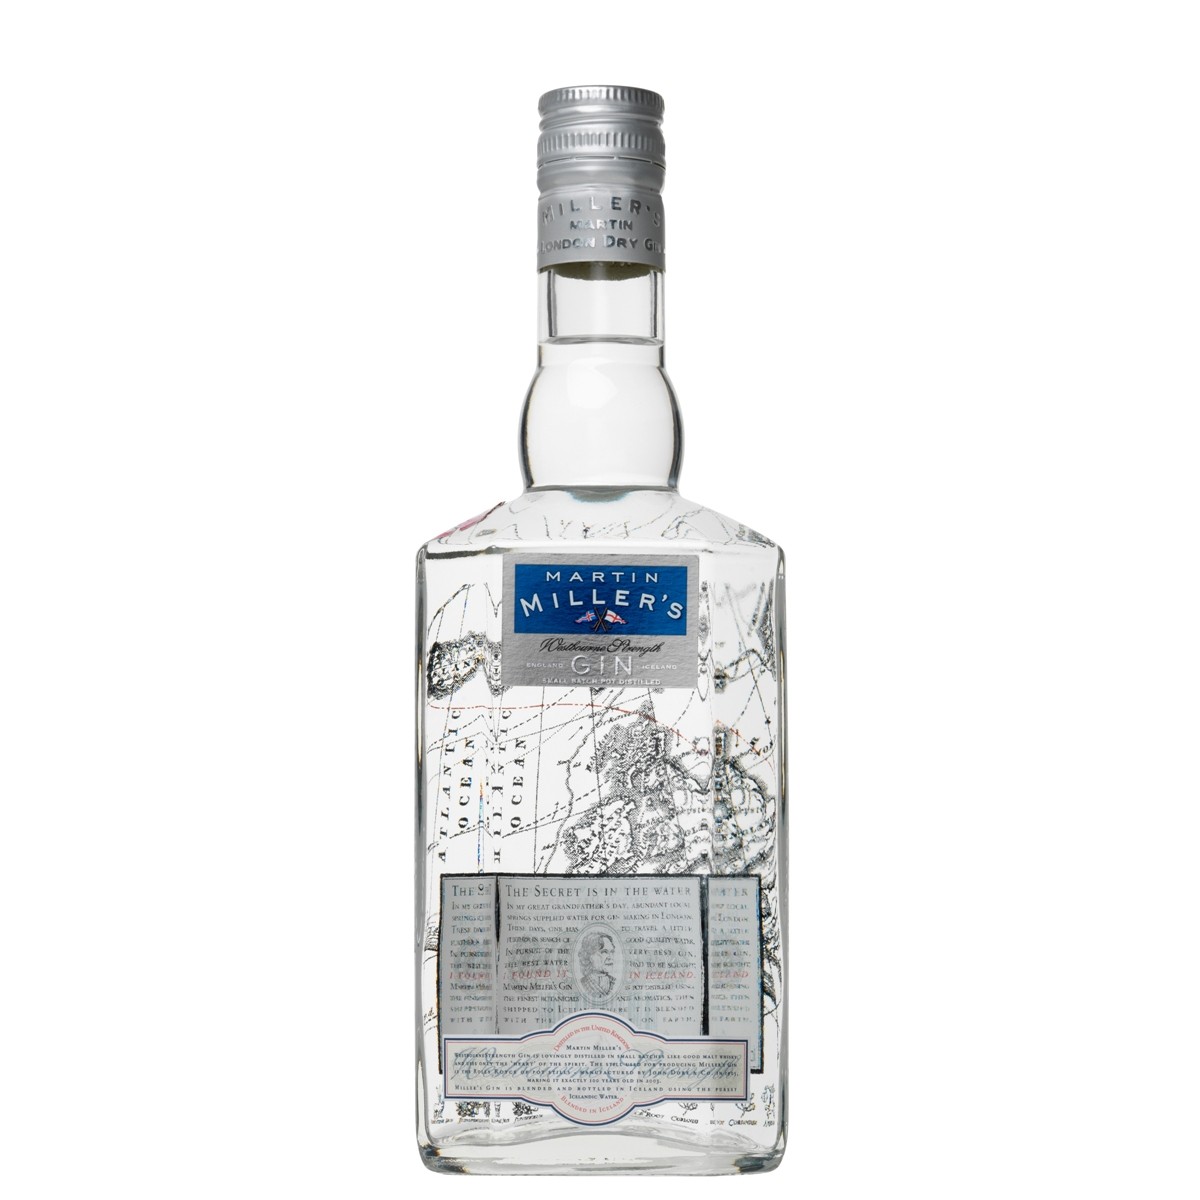 Martin Millier Westbourne Gin – 700ml